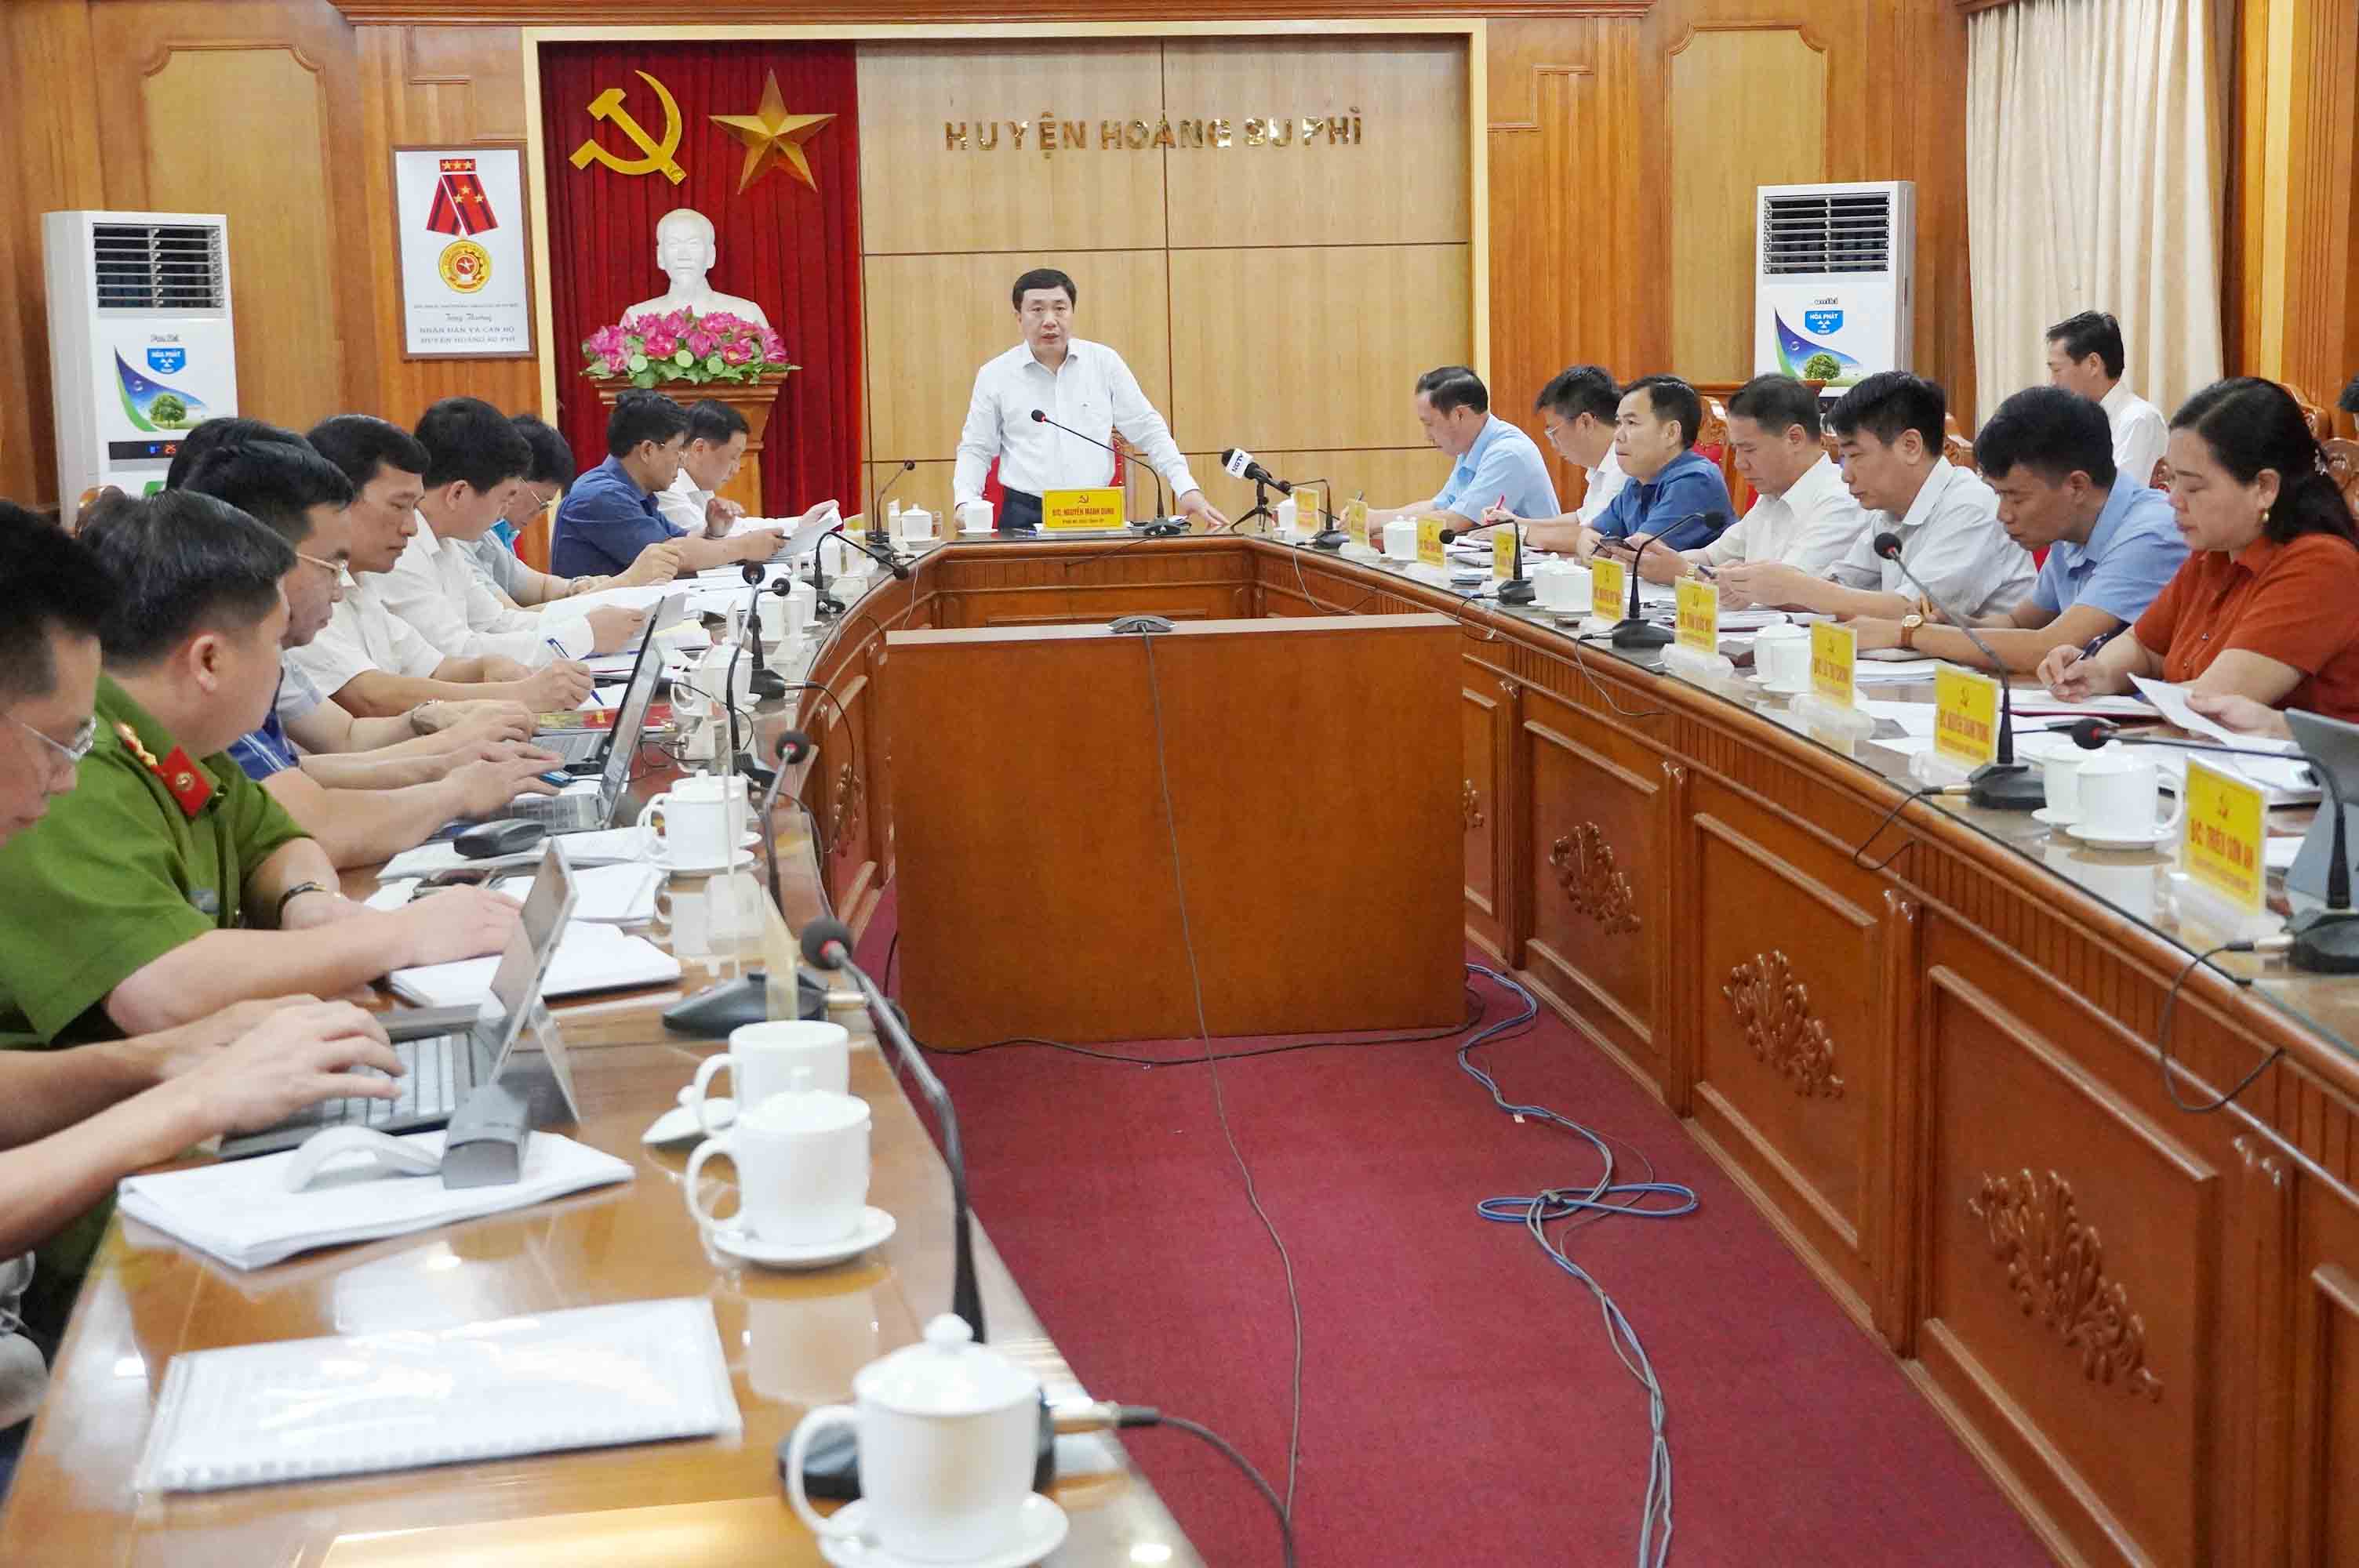 Phó Bí thư Tỉnh ủy làm việc với BTV Huyện ủy Hoàng Su Phì